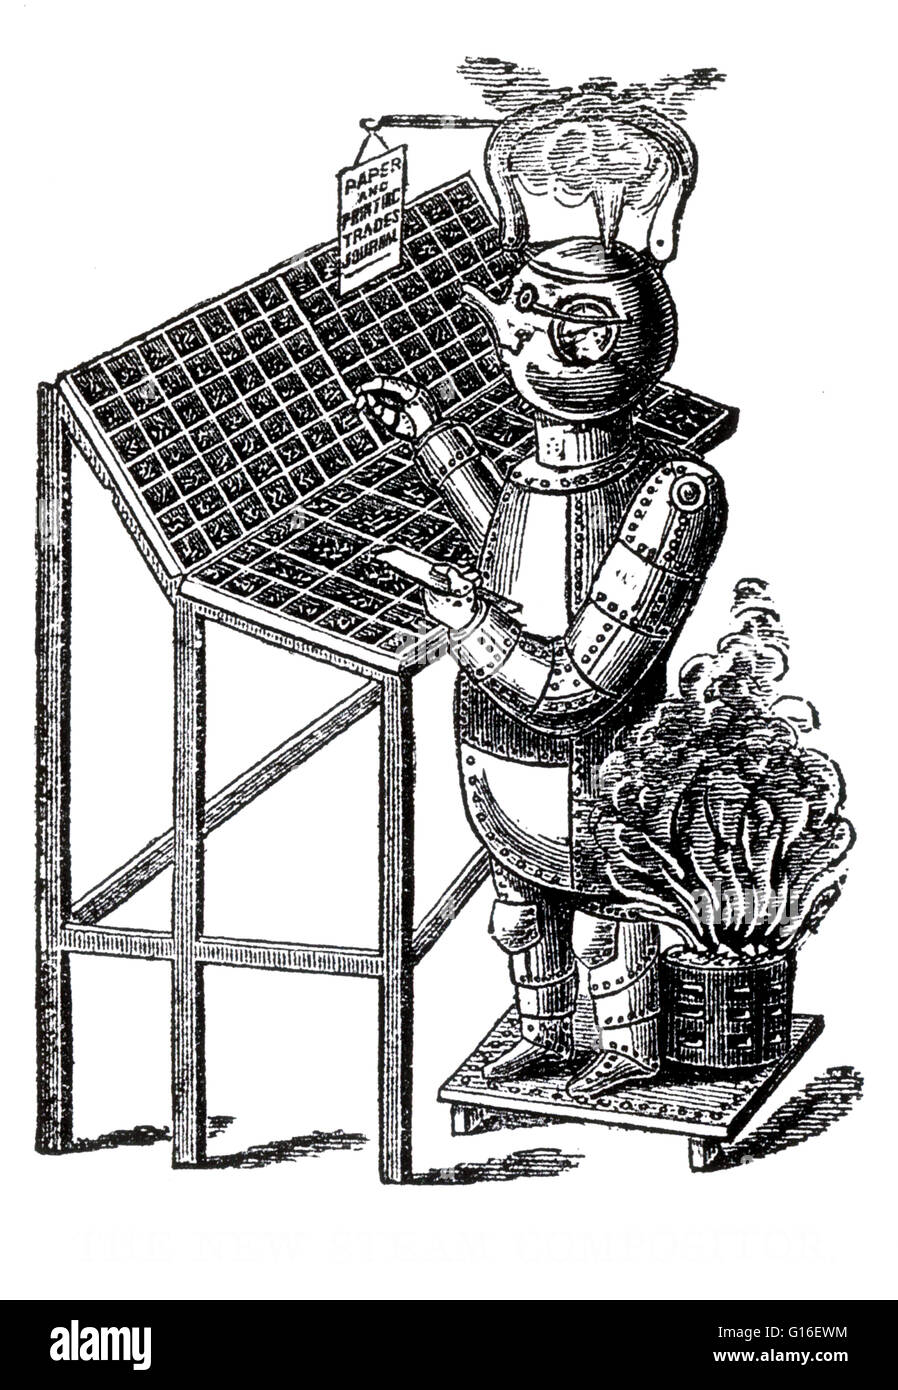 Le terme 'robot' a été utilisé pour désigner les automates fictif dans un jeu de 1921 par l'écrivain tchèque R.U.R, Karel Capek. En 1928, l'un des premiers robots humanoïdes a été exposée à l'exposition annuelle de la Model Engineers Society de Londres. Inventé par W. Banque D'Images